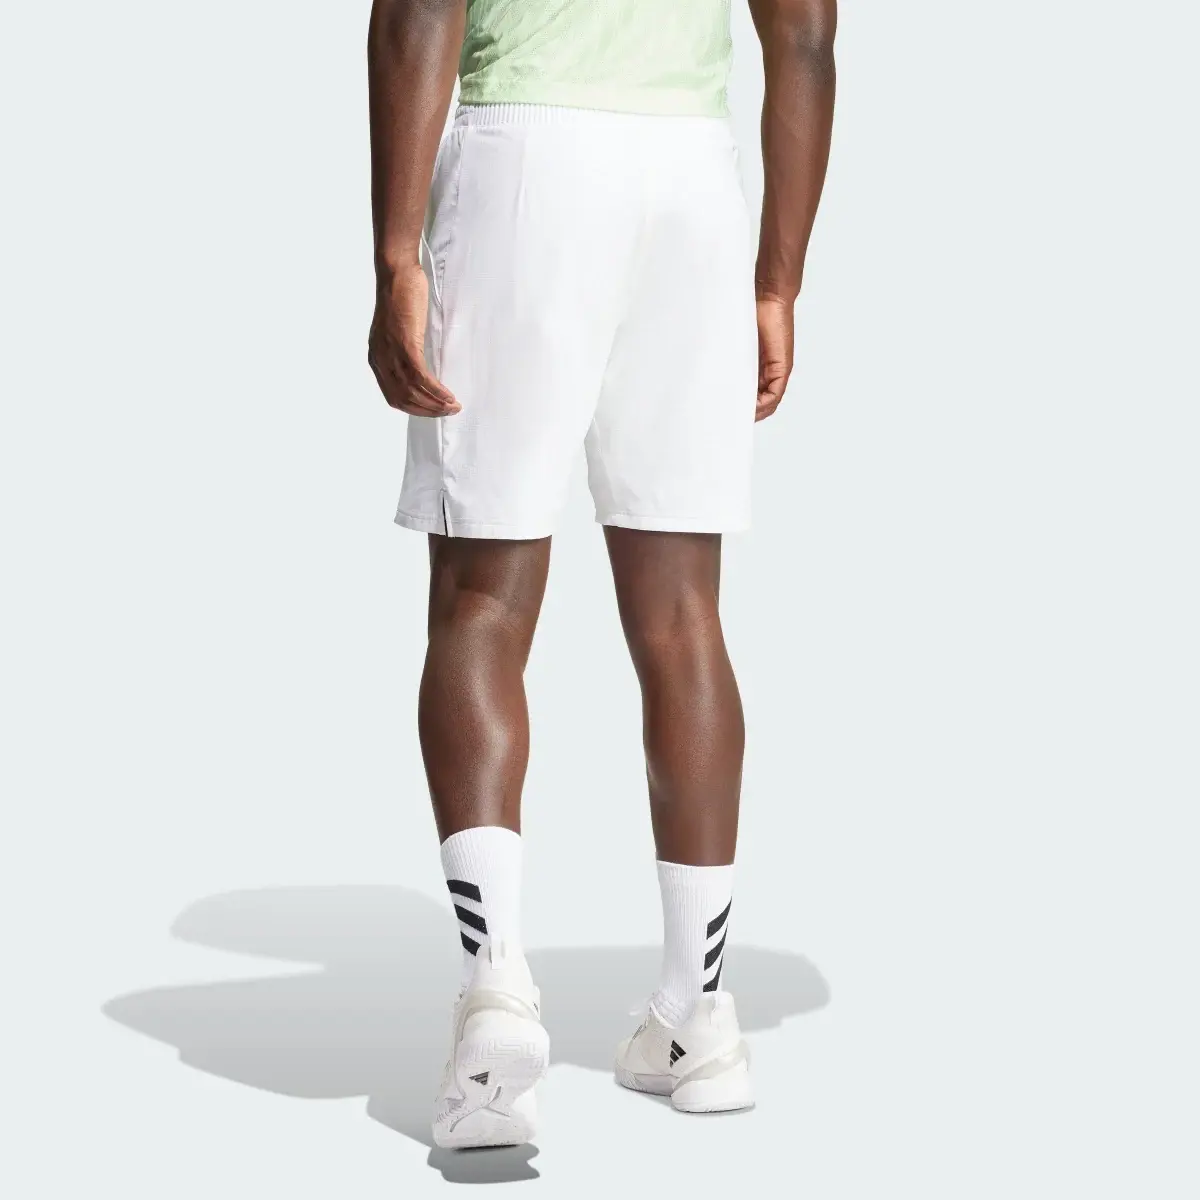 Adidas Tennis Ergo Shorts. 2